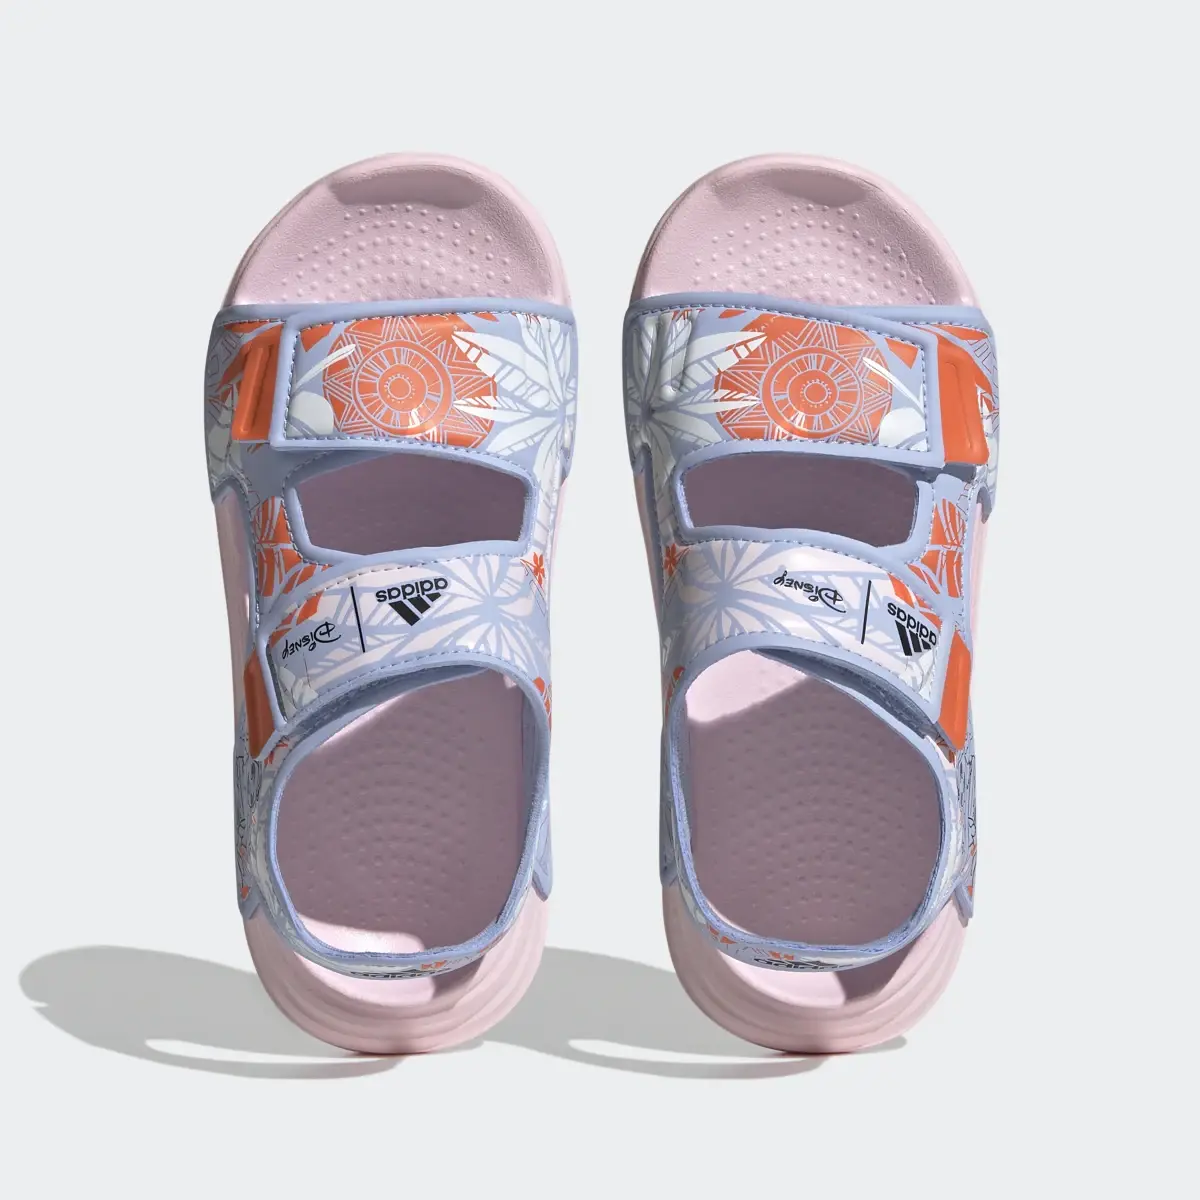 Adidas Sandali adidas x Disney AltaSwim Moana Swim. 3